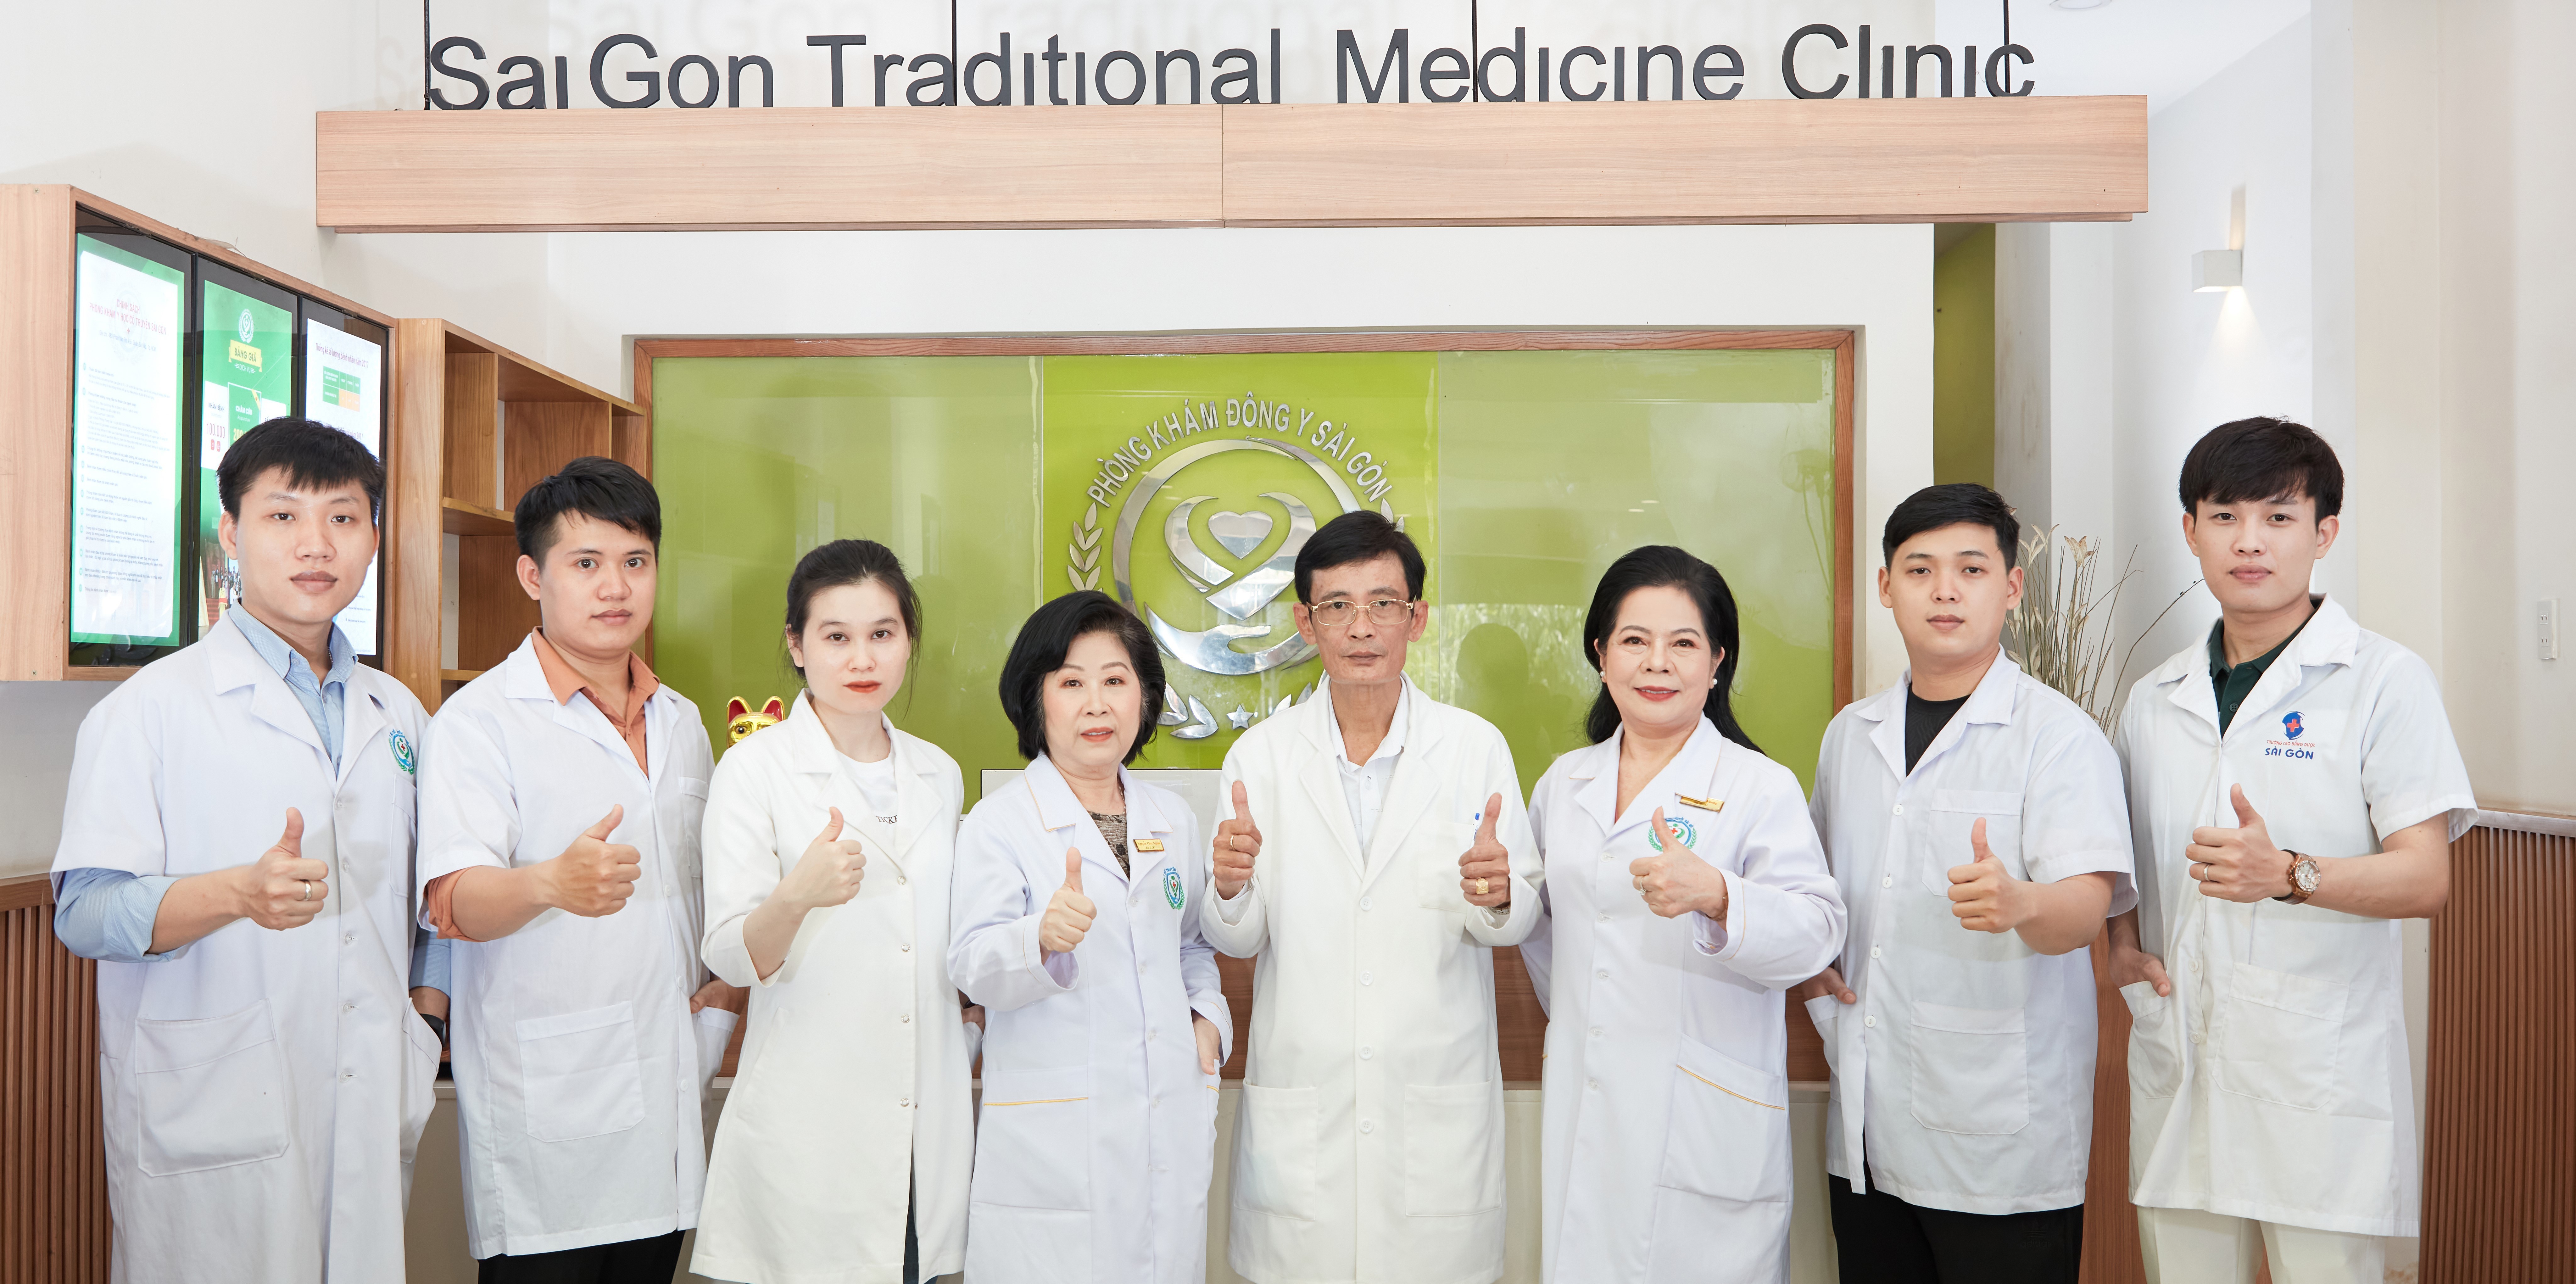 Mẫu đồng phục phòng khám quốc té Saigon Traditional Medicine Clinic